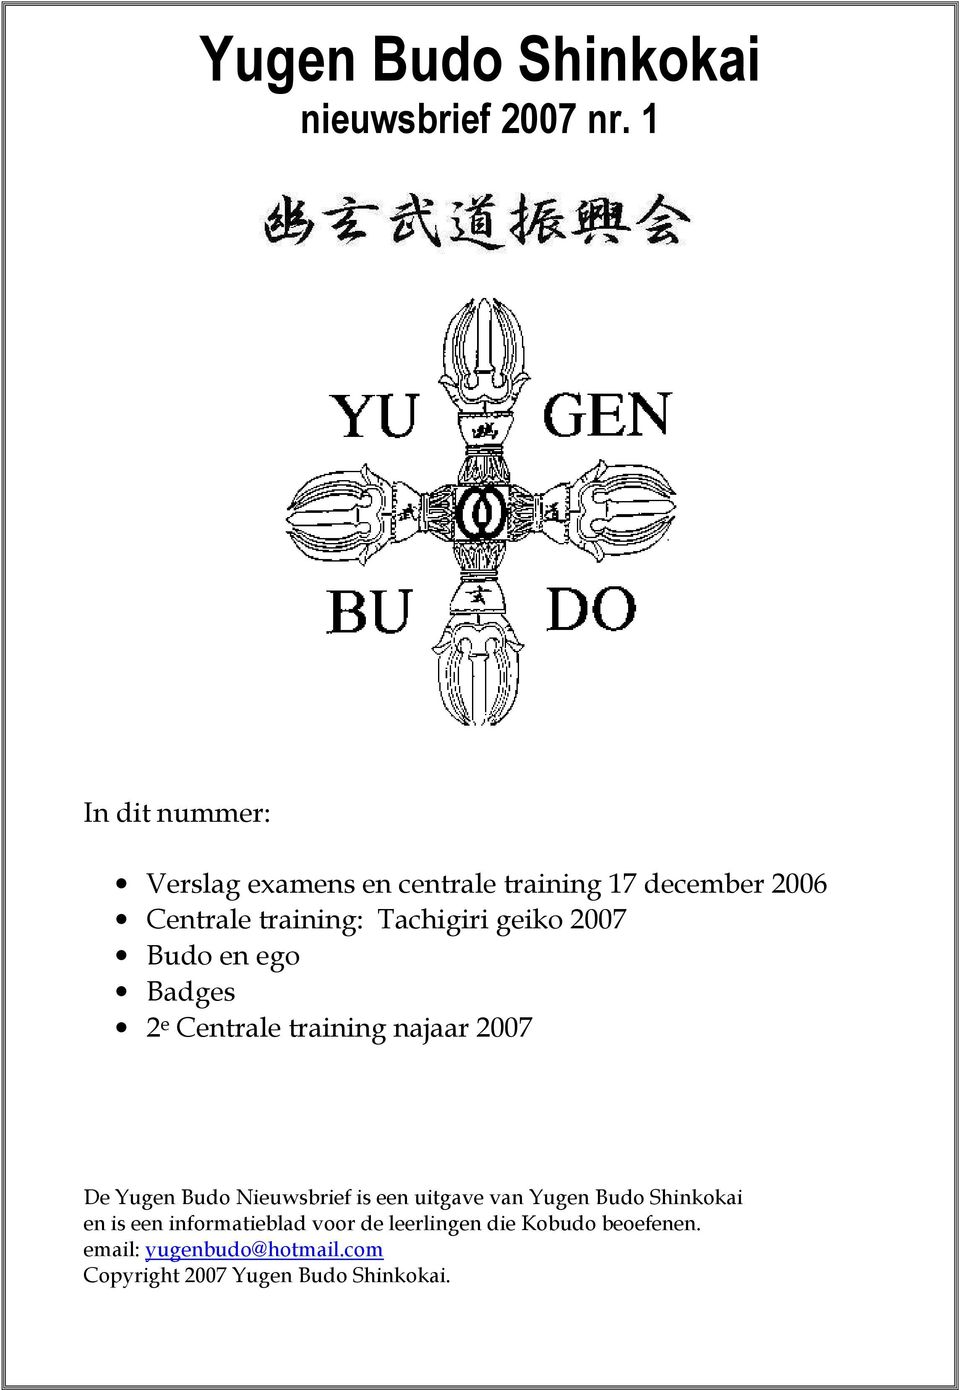 Nieuwsbrief is een uitgave van Yugen Budo Shinkokai en is een informatieblad voor de